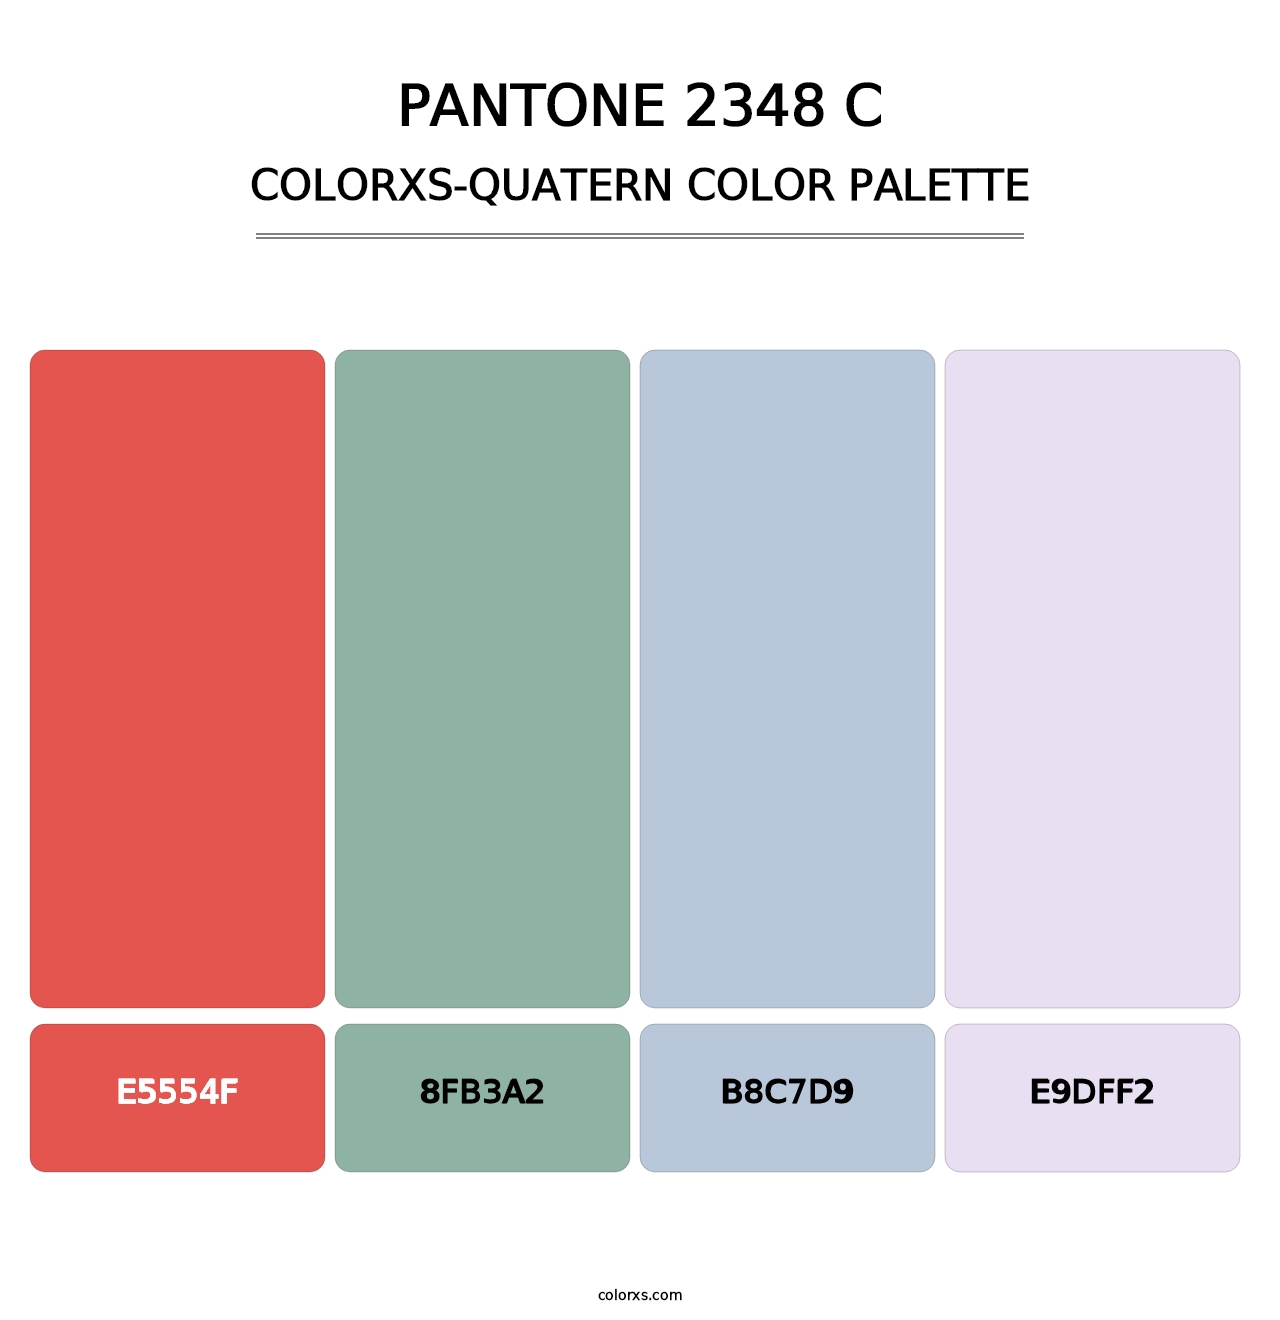 PANTONE 2348 C - Colorxs Quatern Palette